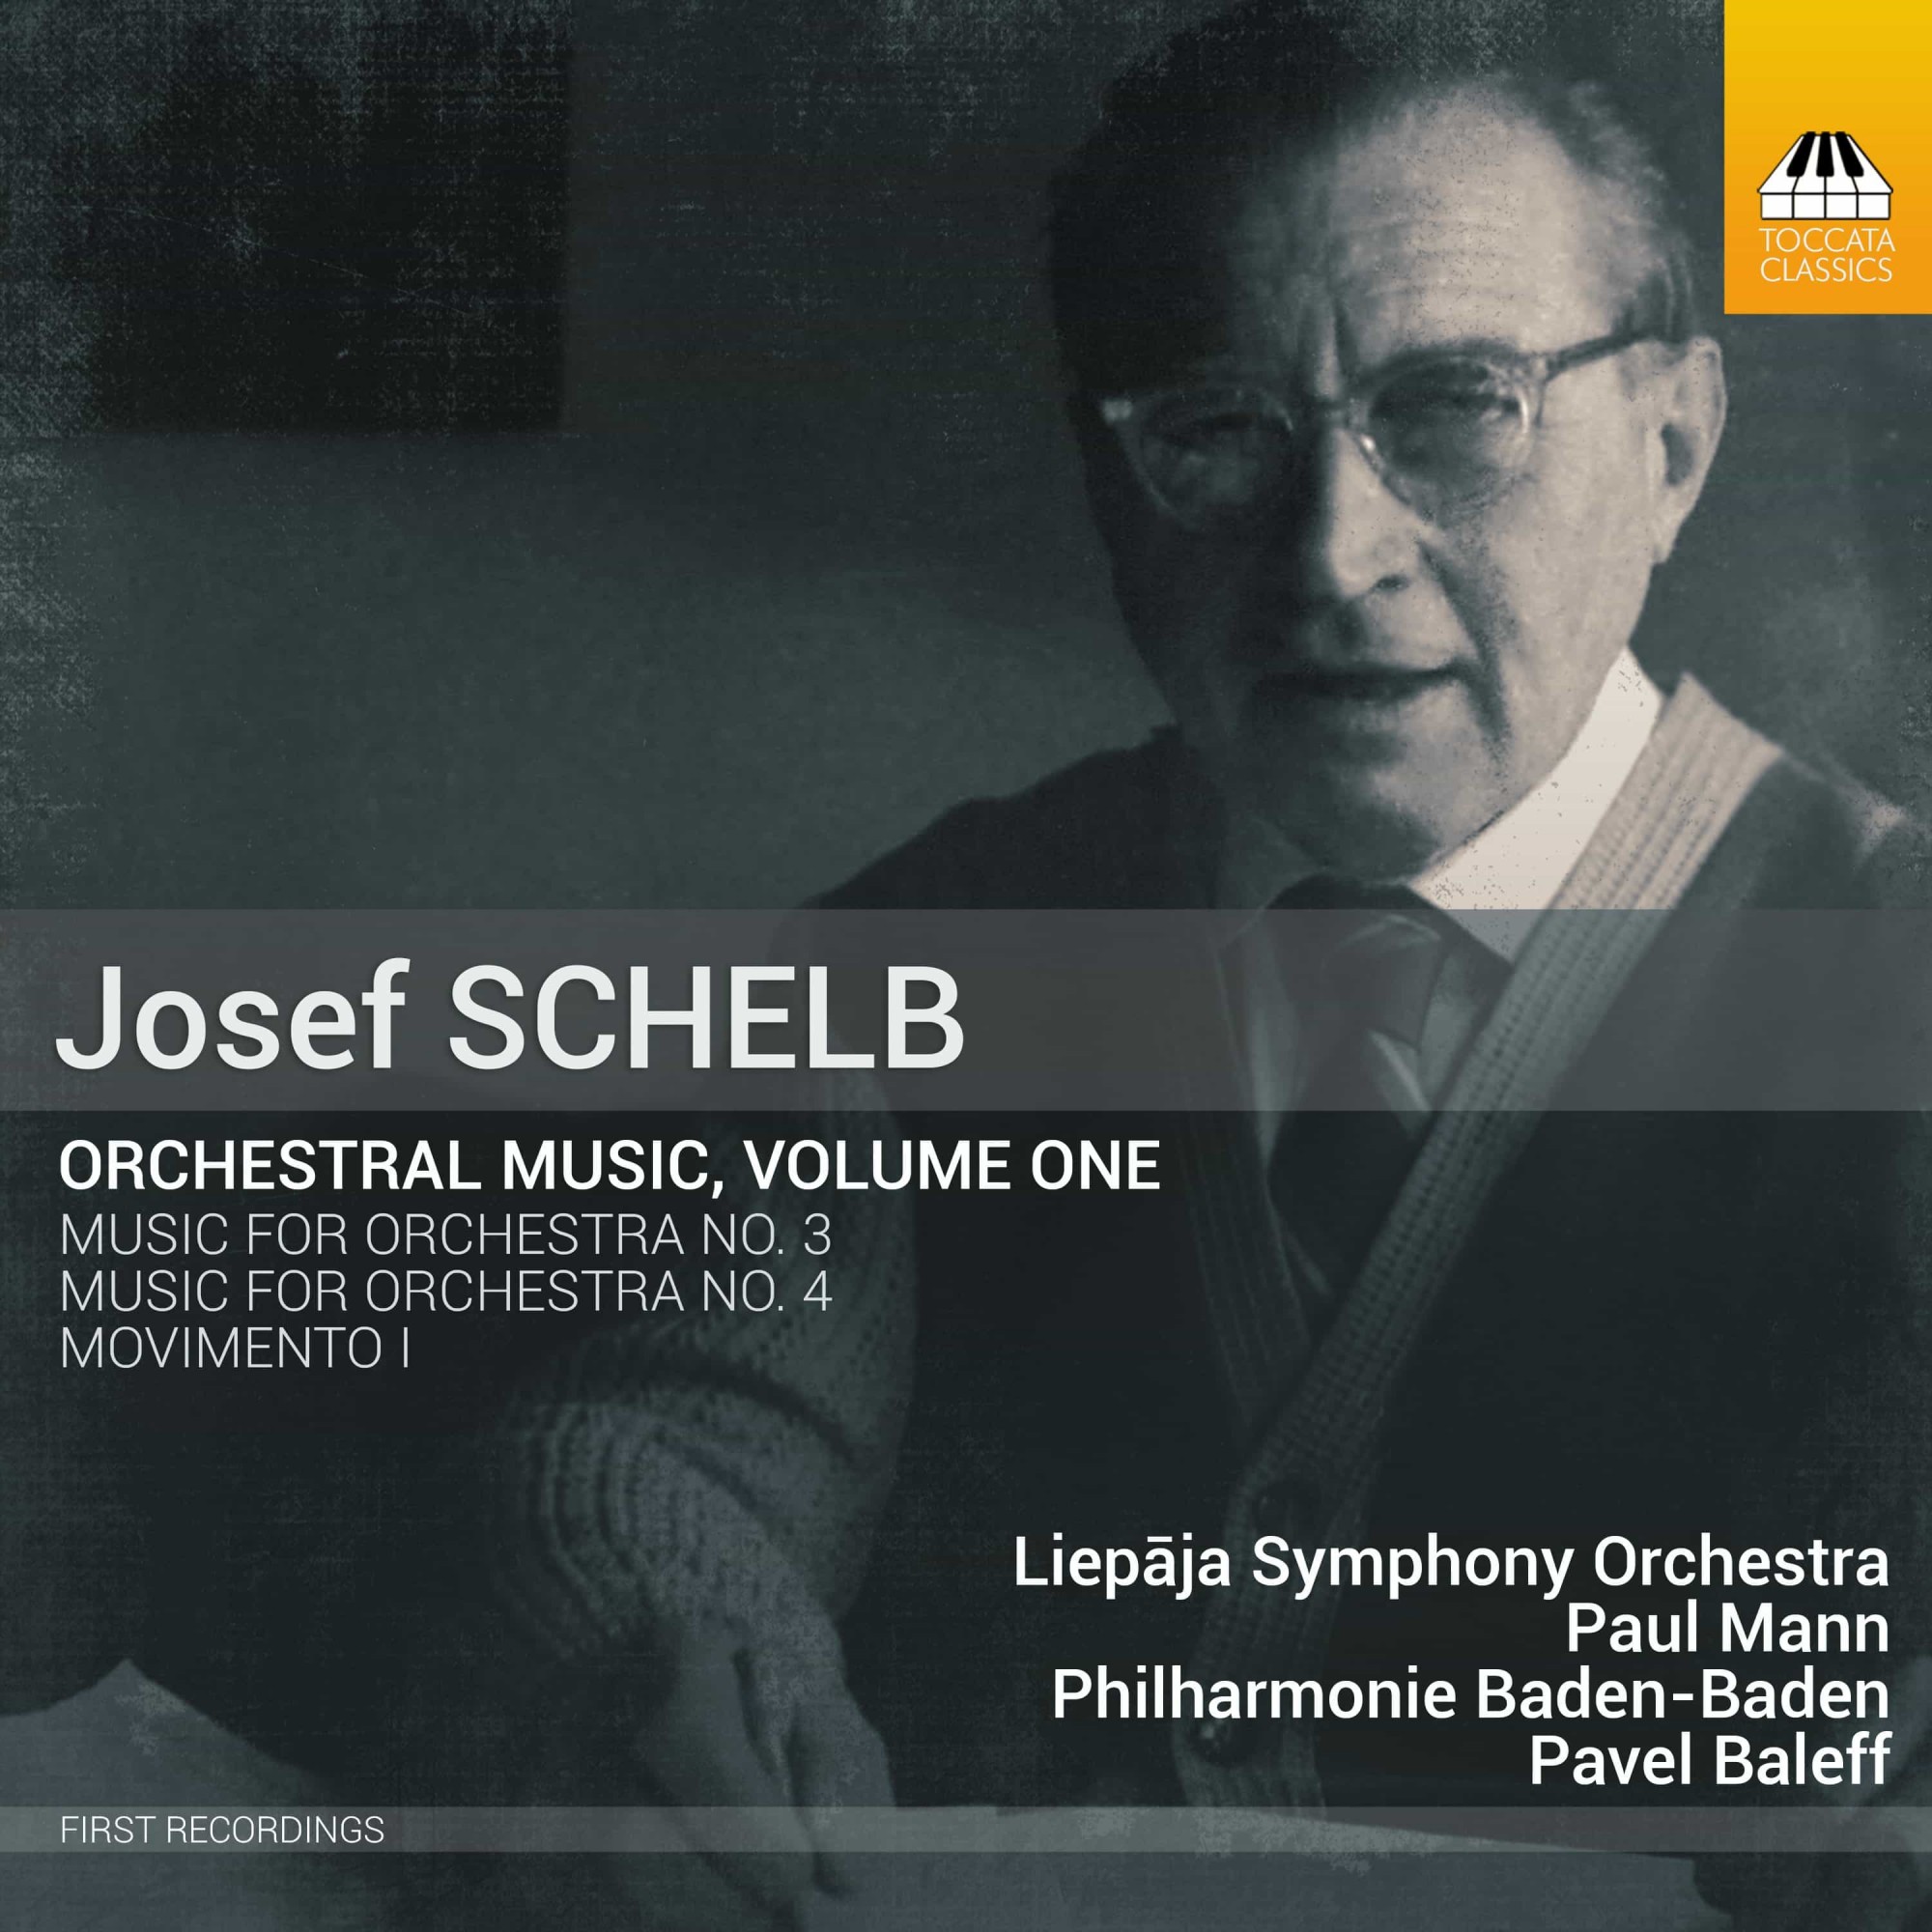 JOSEF SCHELB: ORCHESTRAL MUSIC, VOLUME ONE